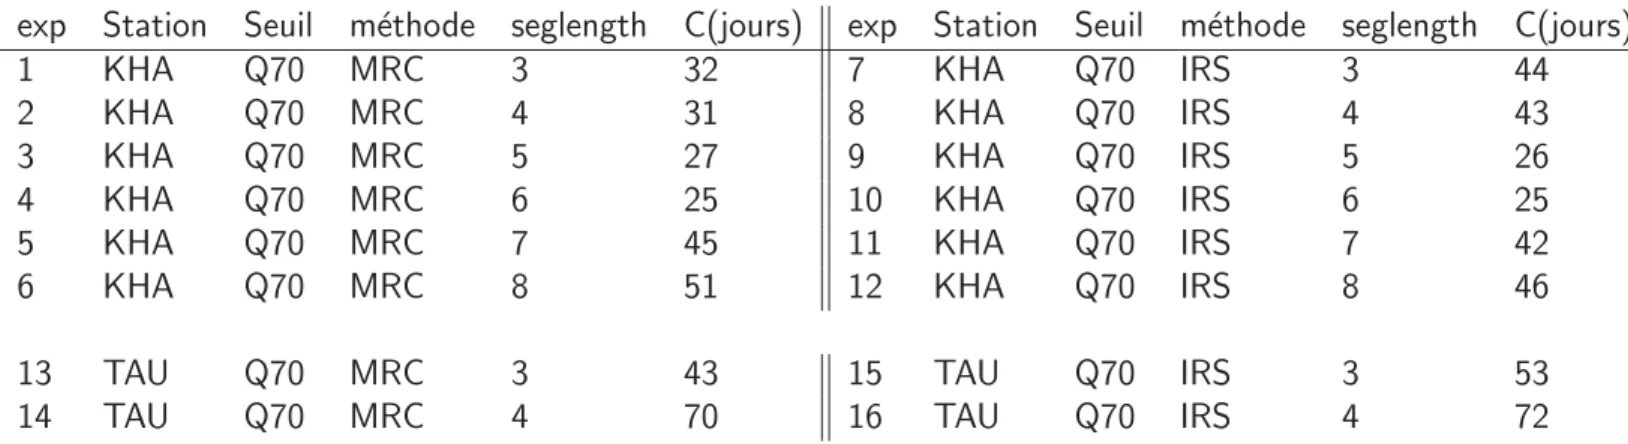 Table 2.11 – R´esum´e des exp´eriences et temps de r´ecession obtenus (C) pour les d´ebits osberv´es aux stations de Kharikhola (KHA) et Tauche (TAU), pour les m´ethodes Master Recession Curve (MRC) et Individal Recession Segment (IRS), pour diff´erentes d